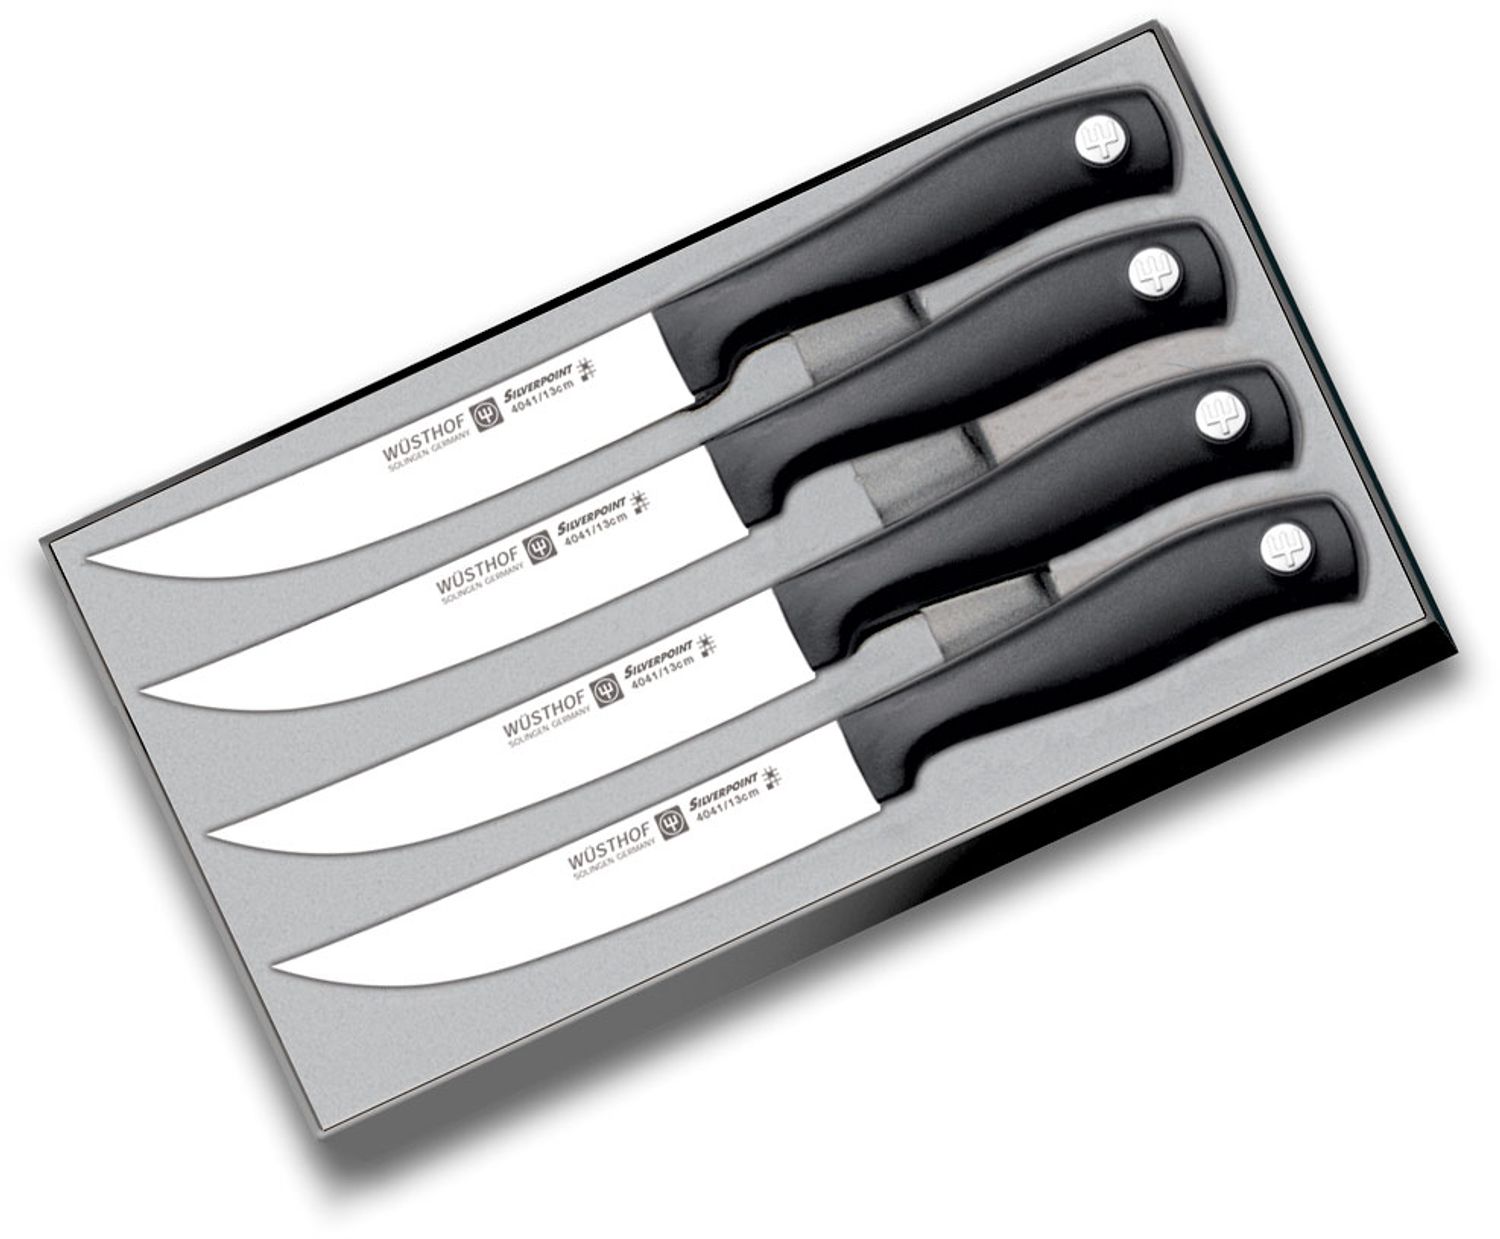 Wusthof silverpoint steak knife 4041/13cm 5 inch solingen germany Set of 6!